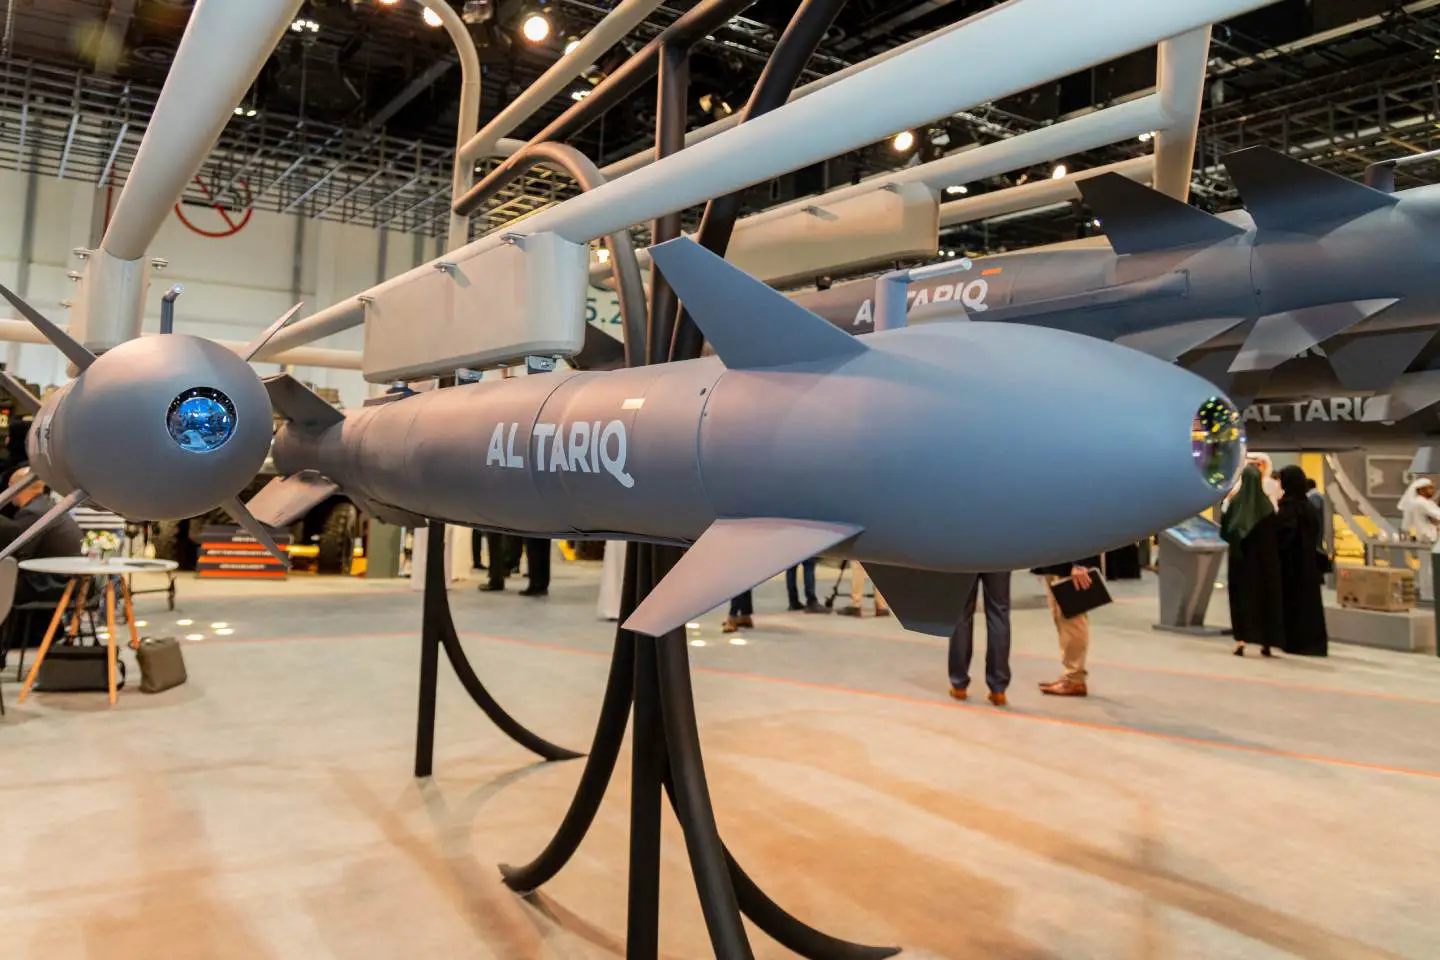 Τα ΗΑΕ υπέγραψαν σύμβαση 272 εκατ. δολ. για την προμήθεια κατευθυνόμενων βομβών μεγάλου βεληνεκούς Al-Tariq LR